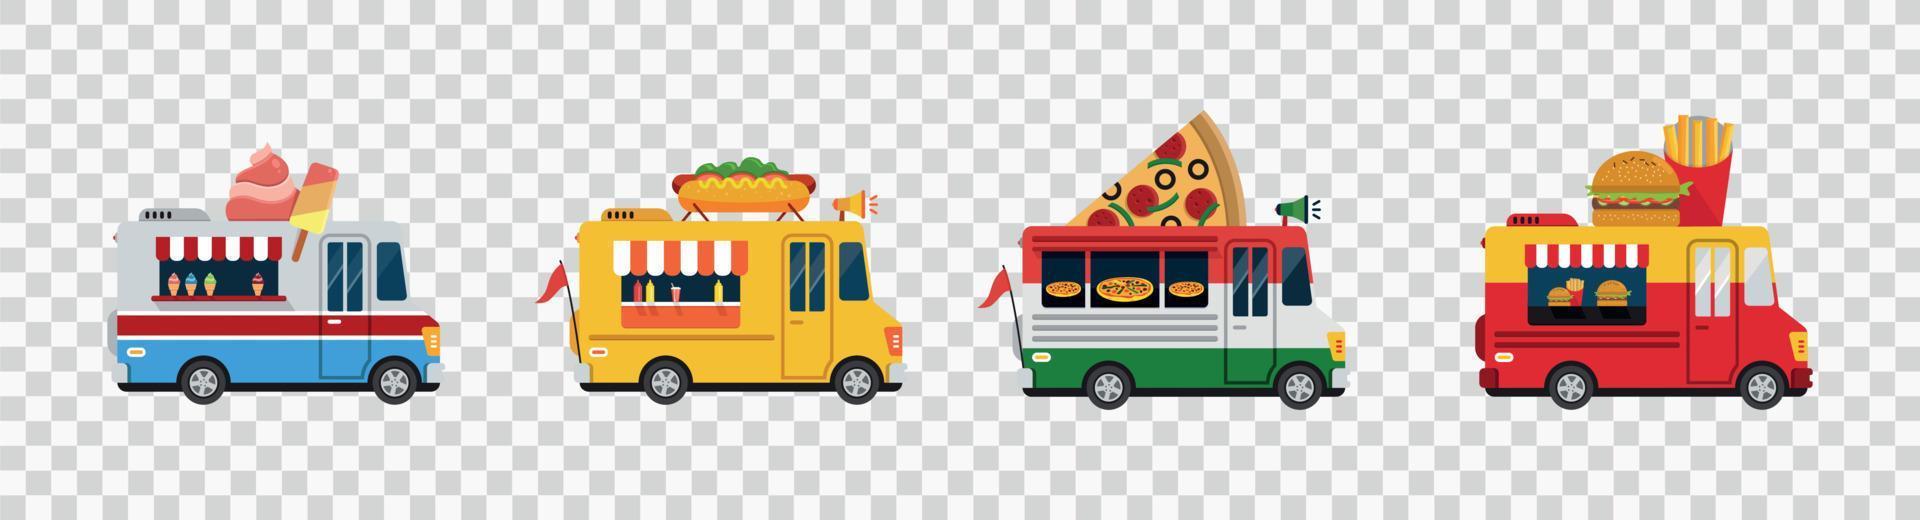 camion di cibo isolato auto vettoriali, furgoni cartoni animati per cibo di strada che vende illustrazione vettoriale